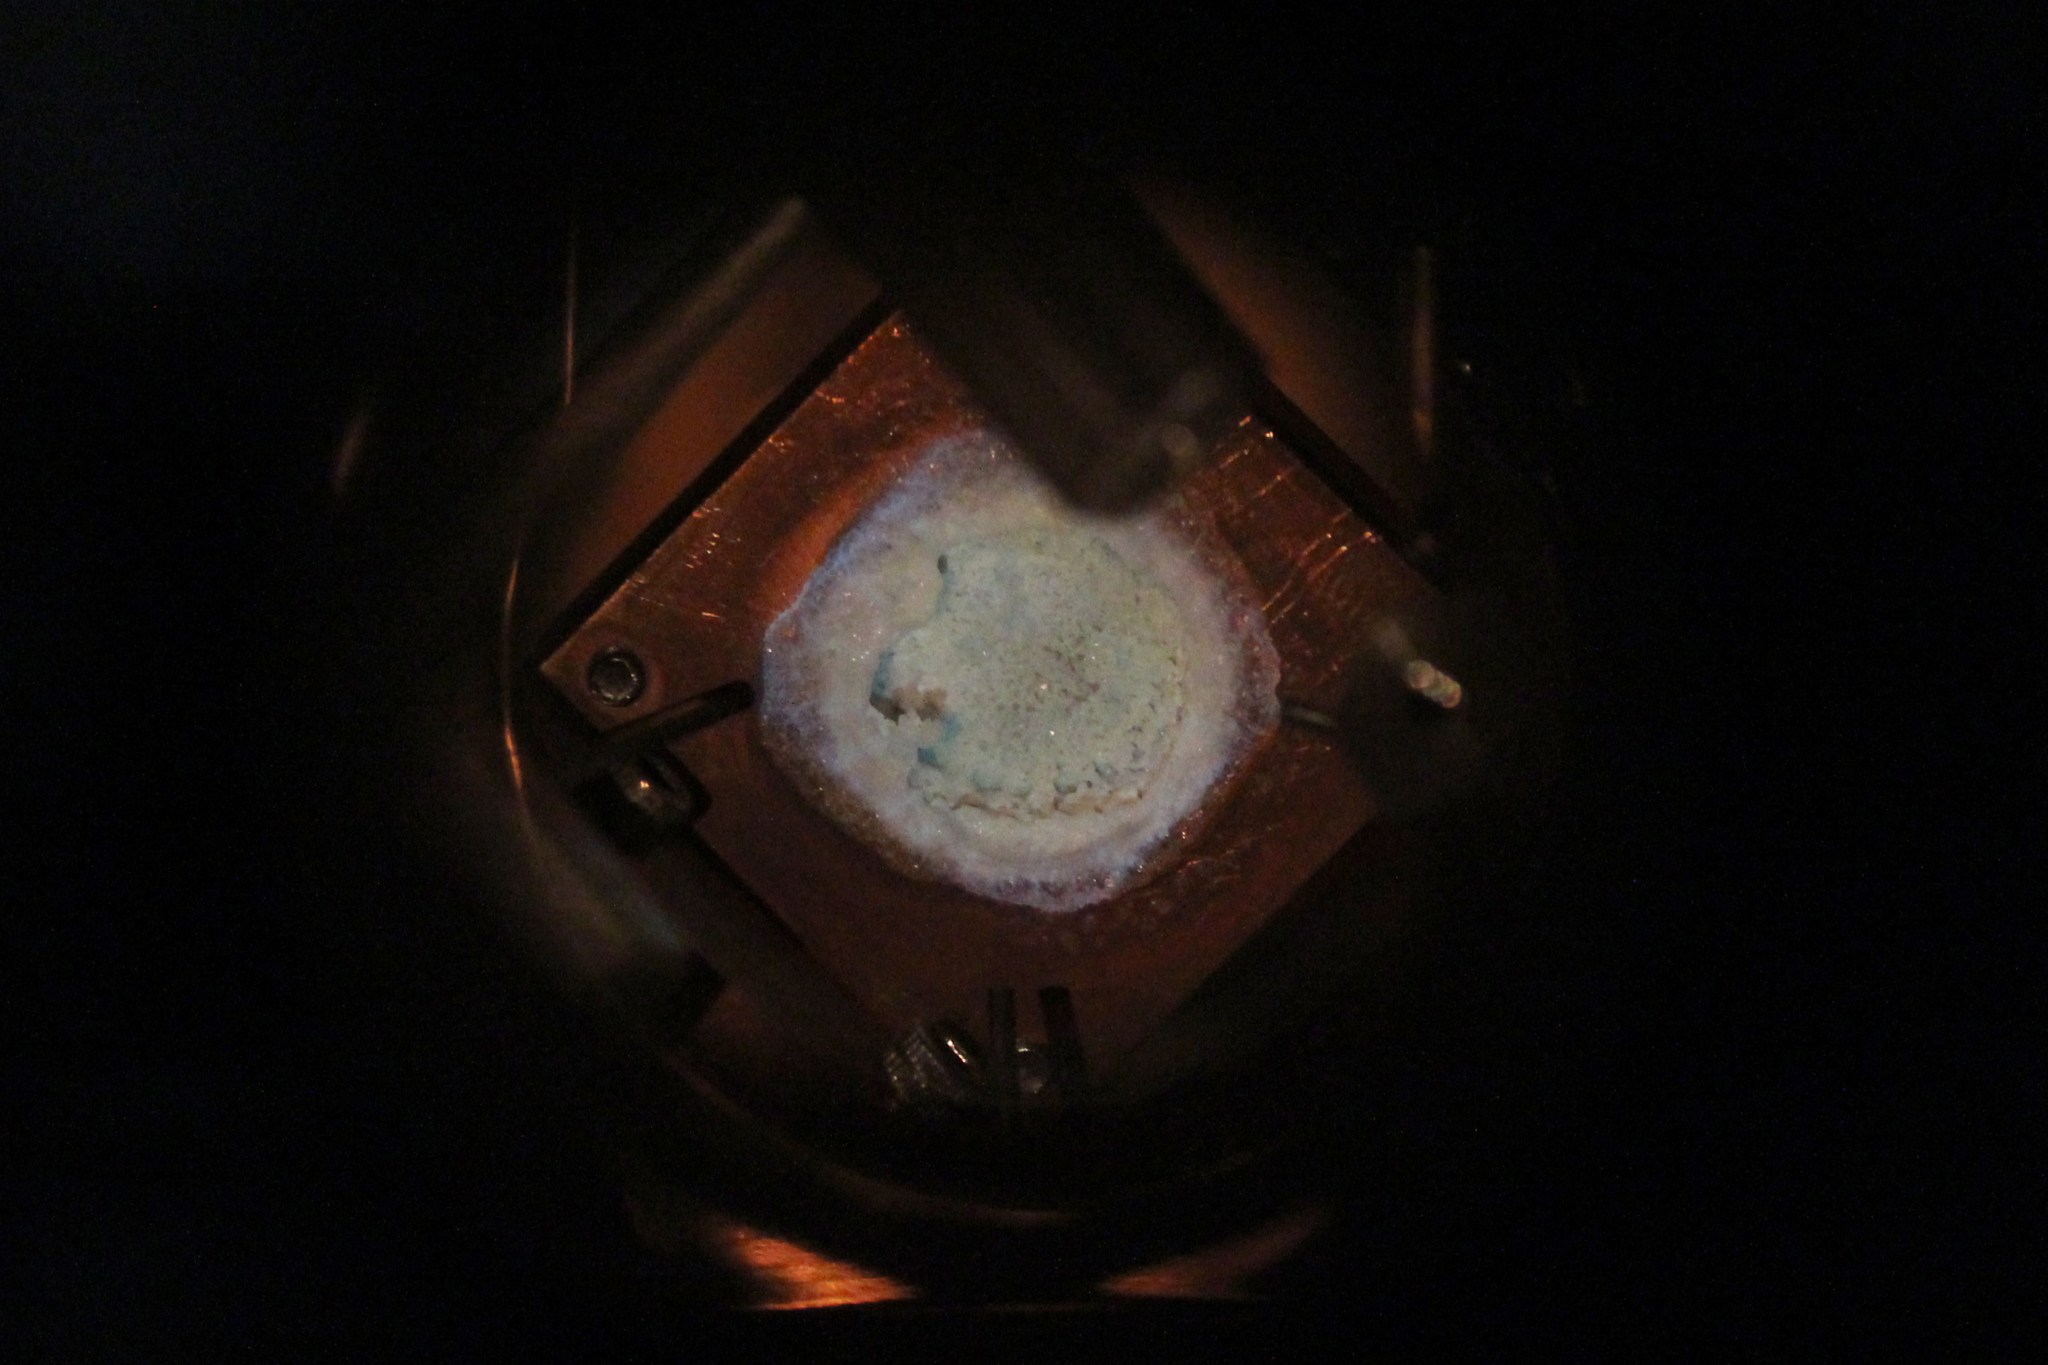 A salt sample inside a JPL test chamber 